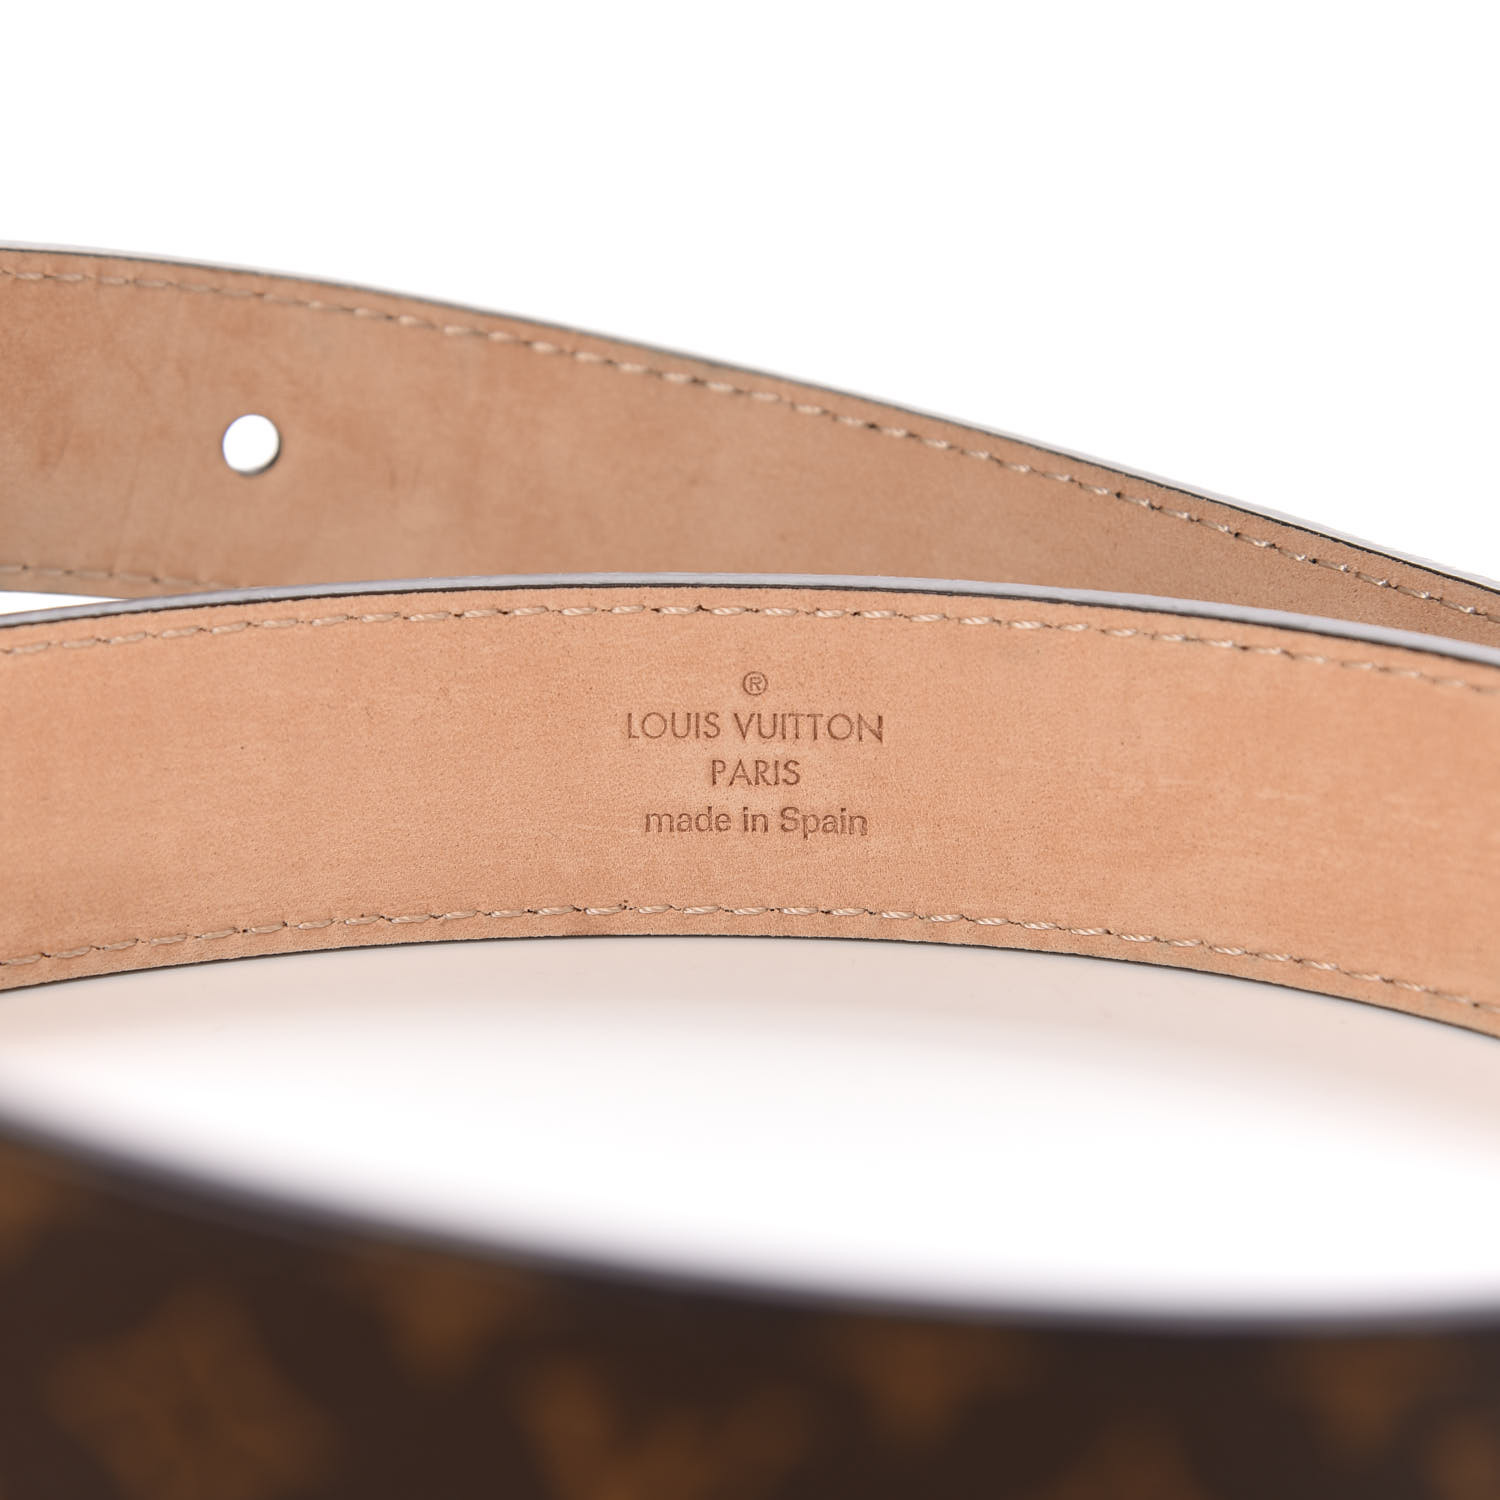 Louis Vuitton LV Shape Reversible Belt Limited Edition Monogram